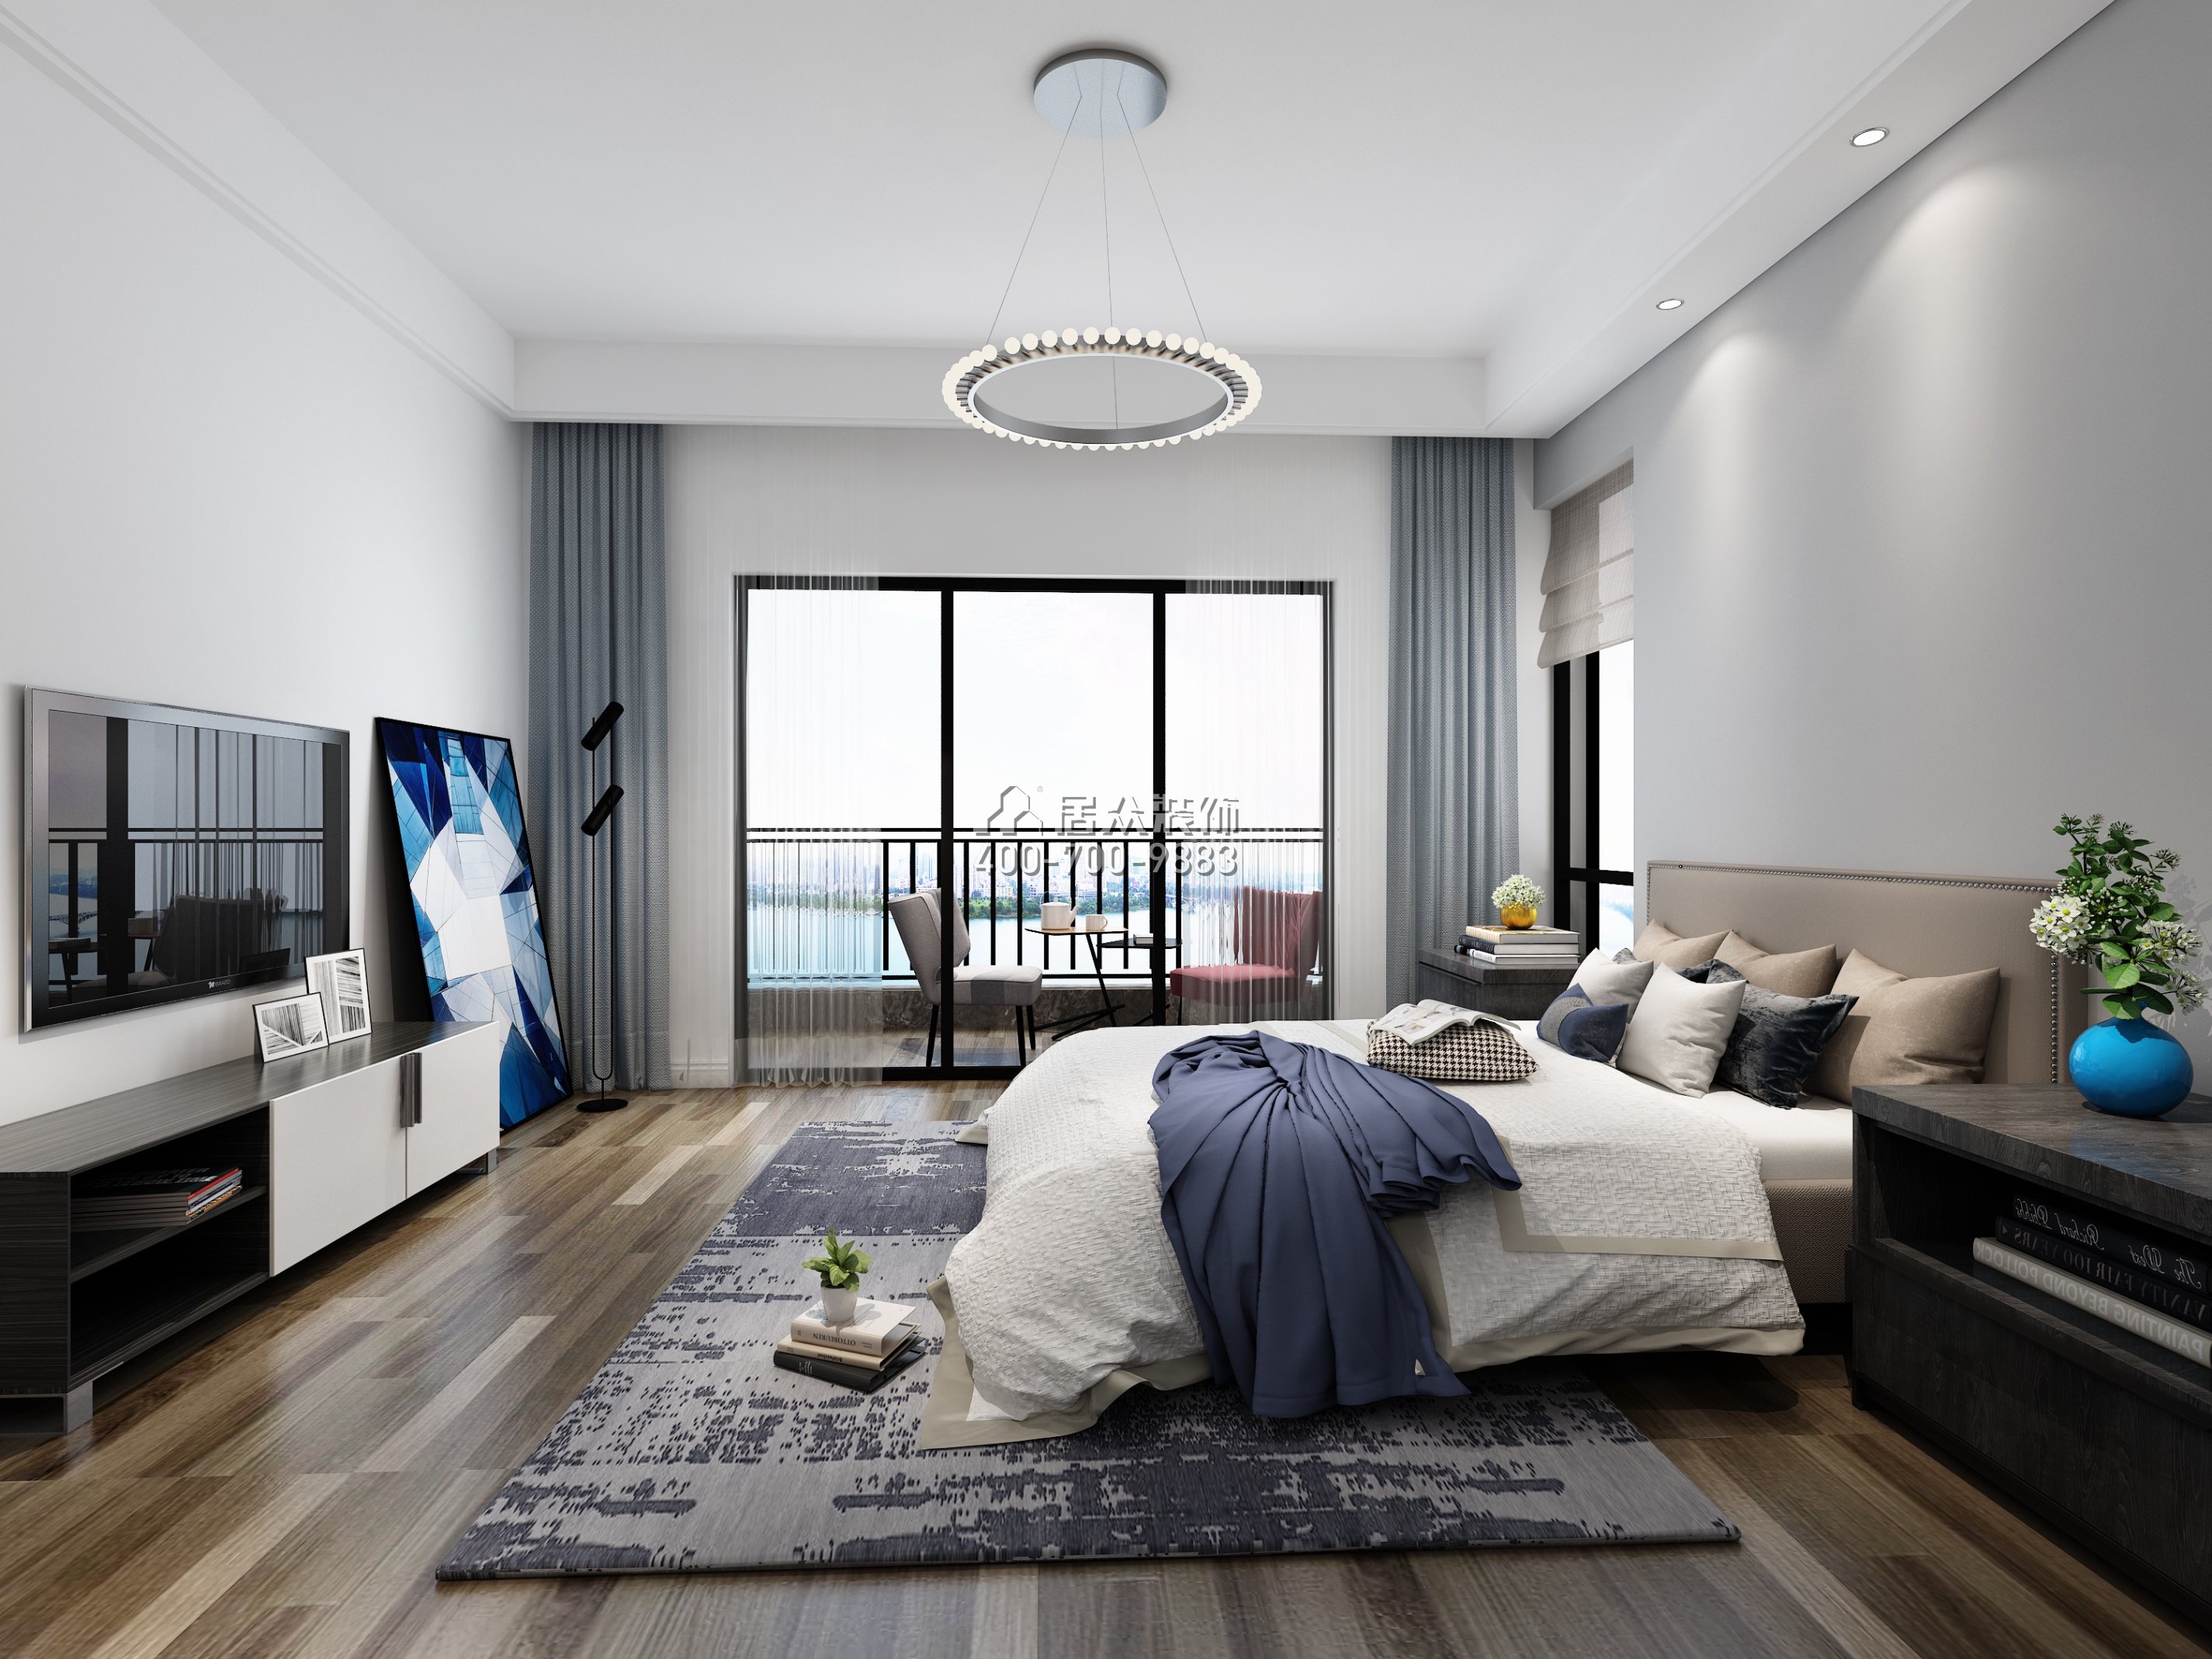 華發峰景灣216平方米現代簡約風格平層戶型臥室裝修效果圖